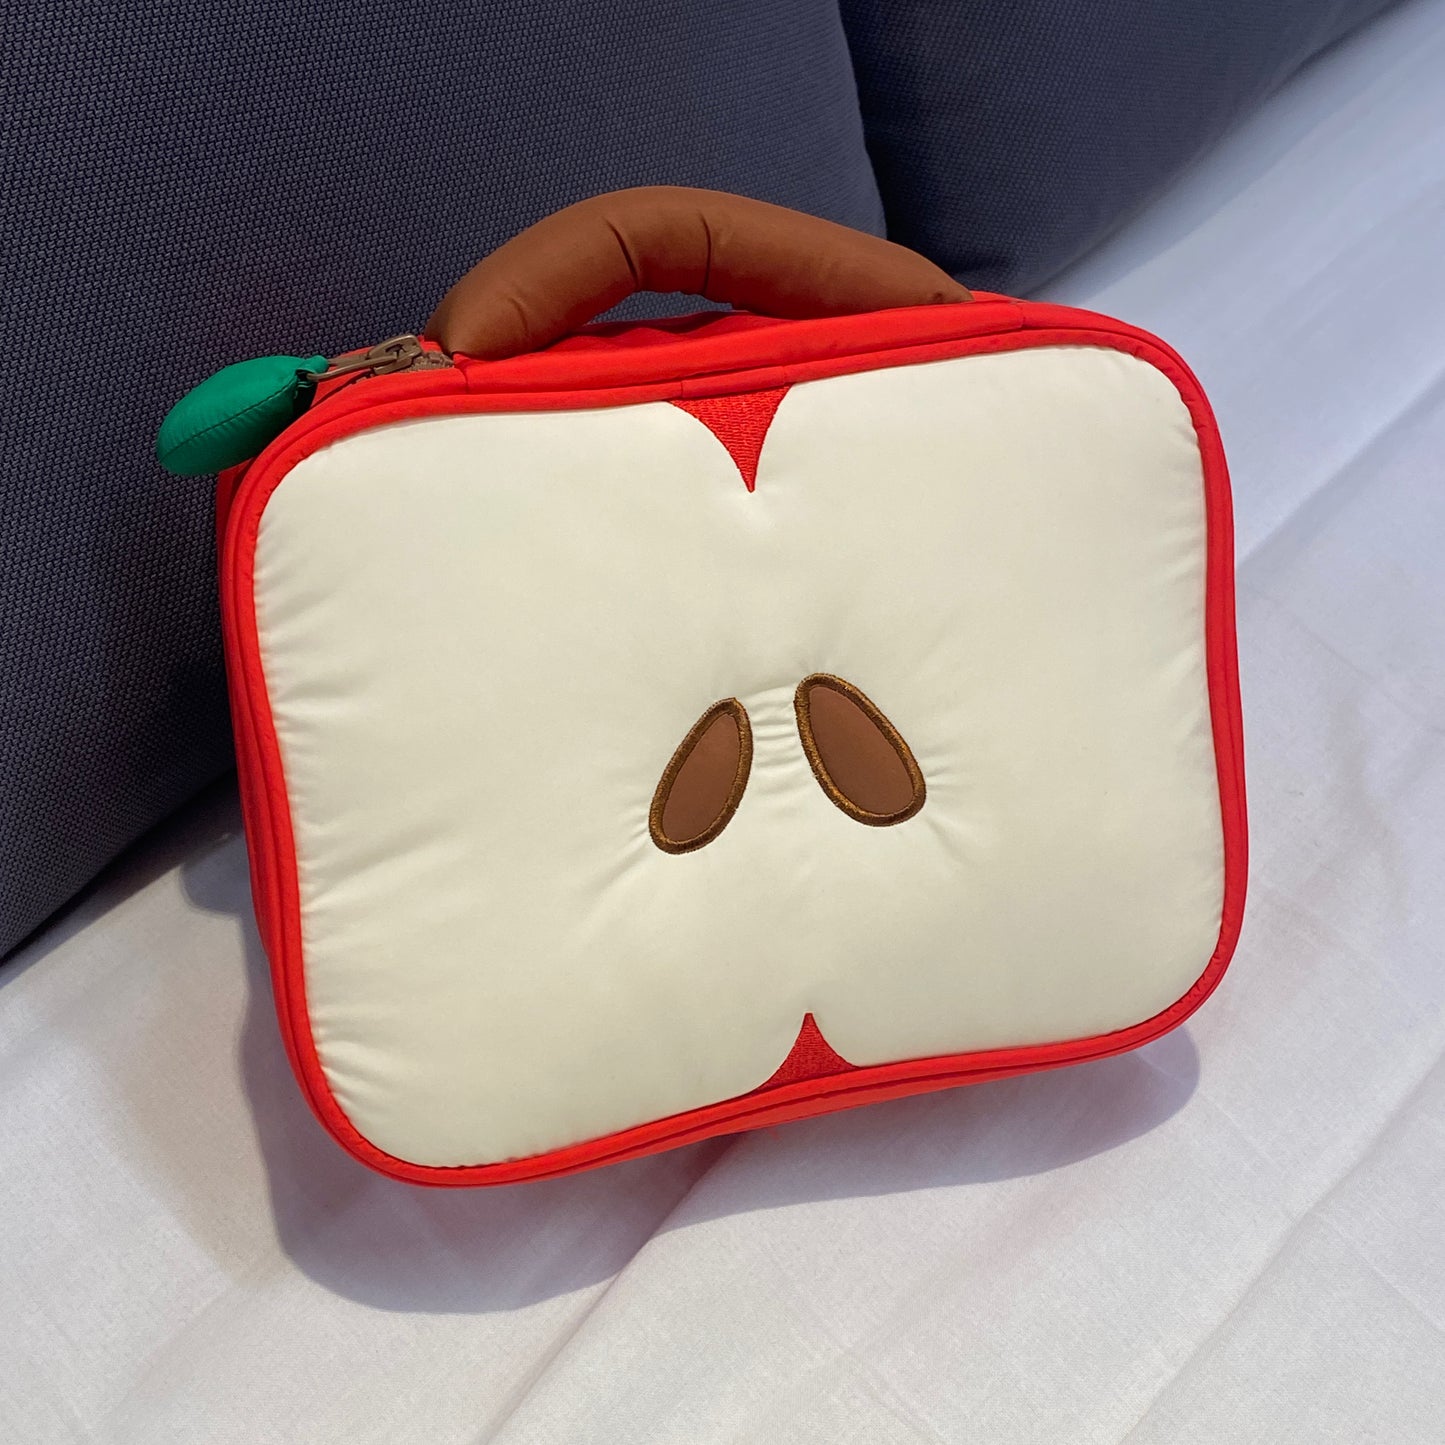 사과 모양의 메이크업 가방